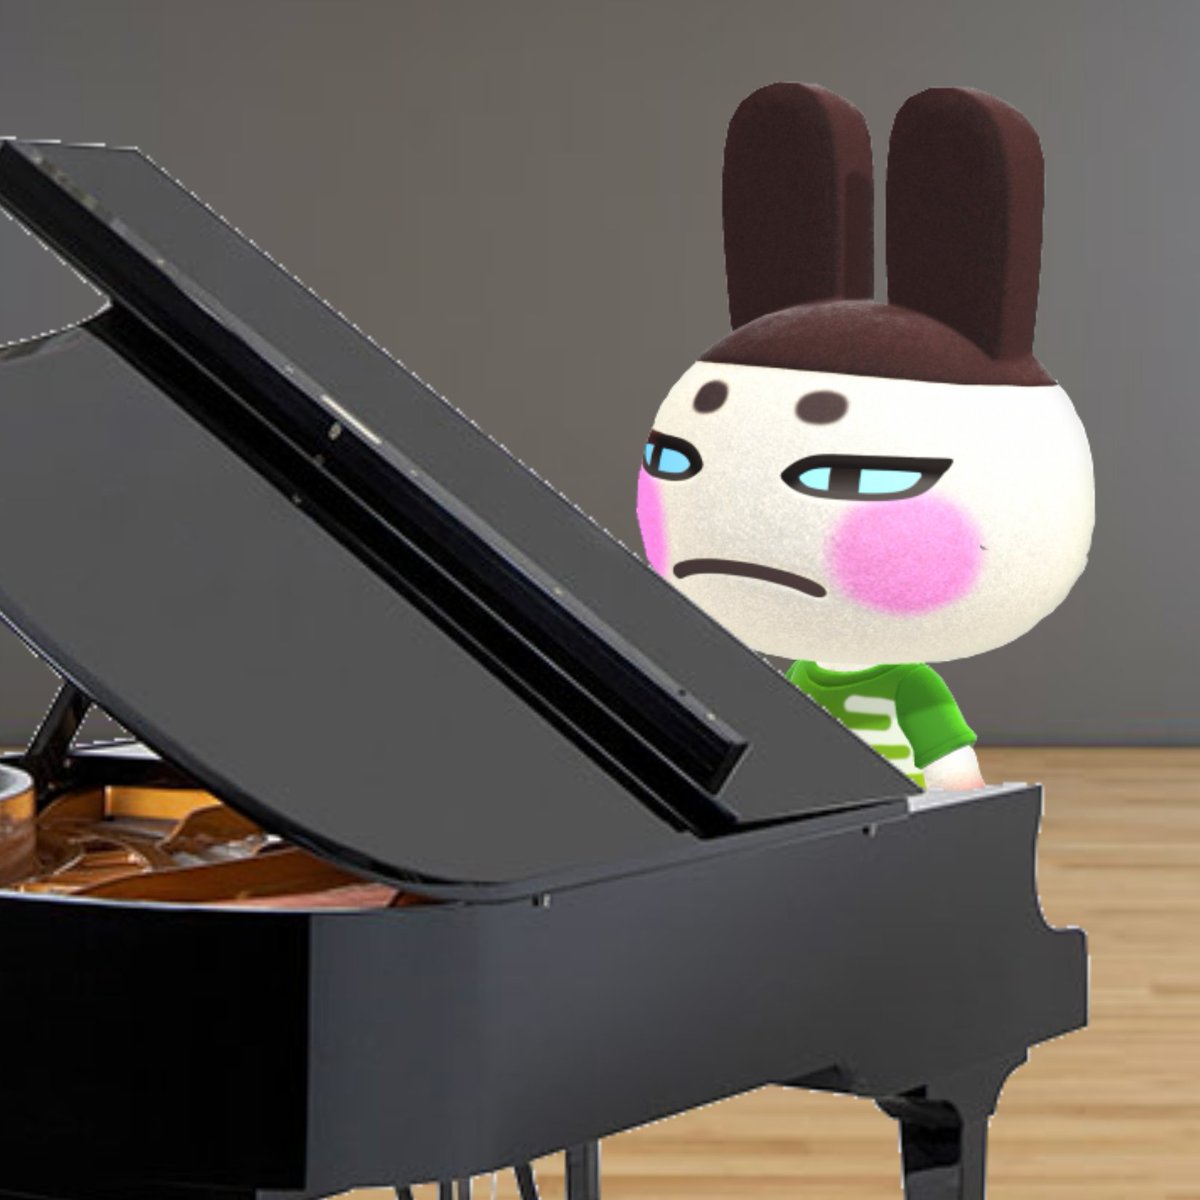  @TakeThis2UrAve Genji playing piano